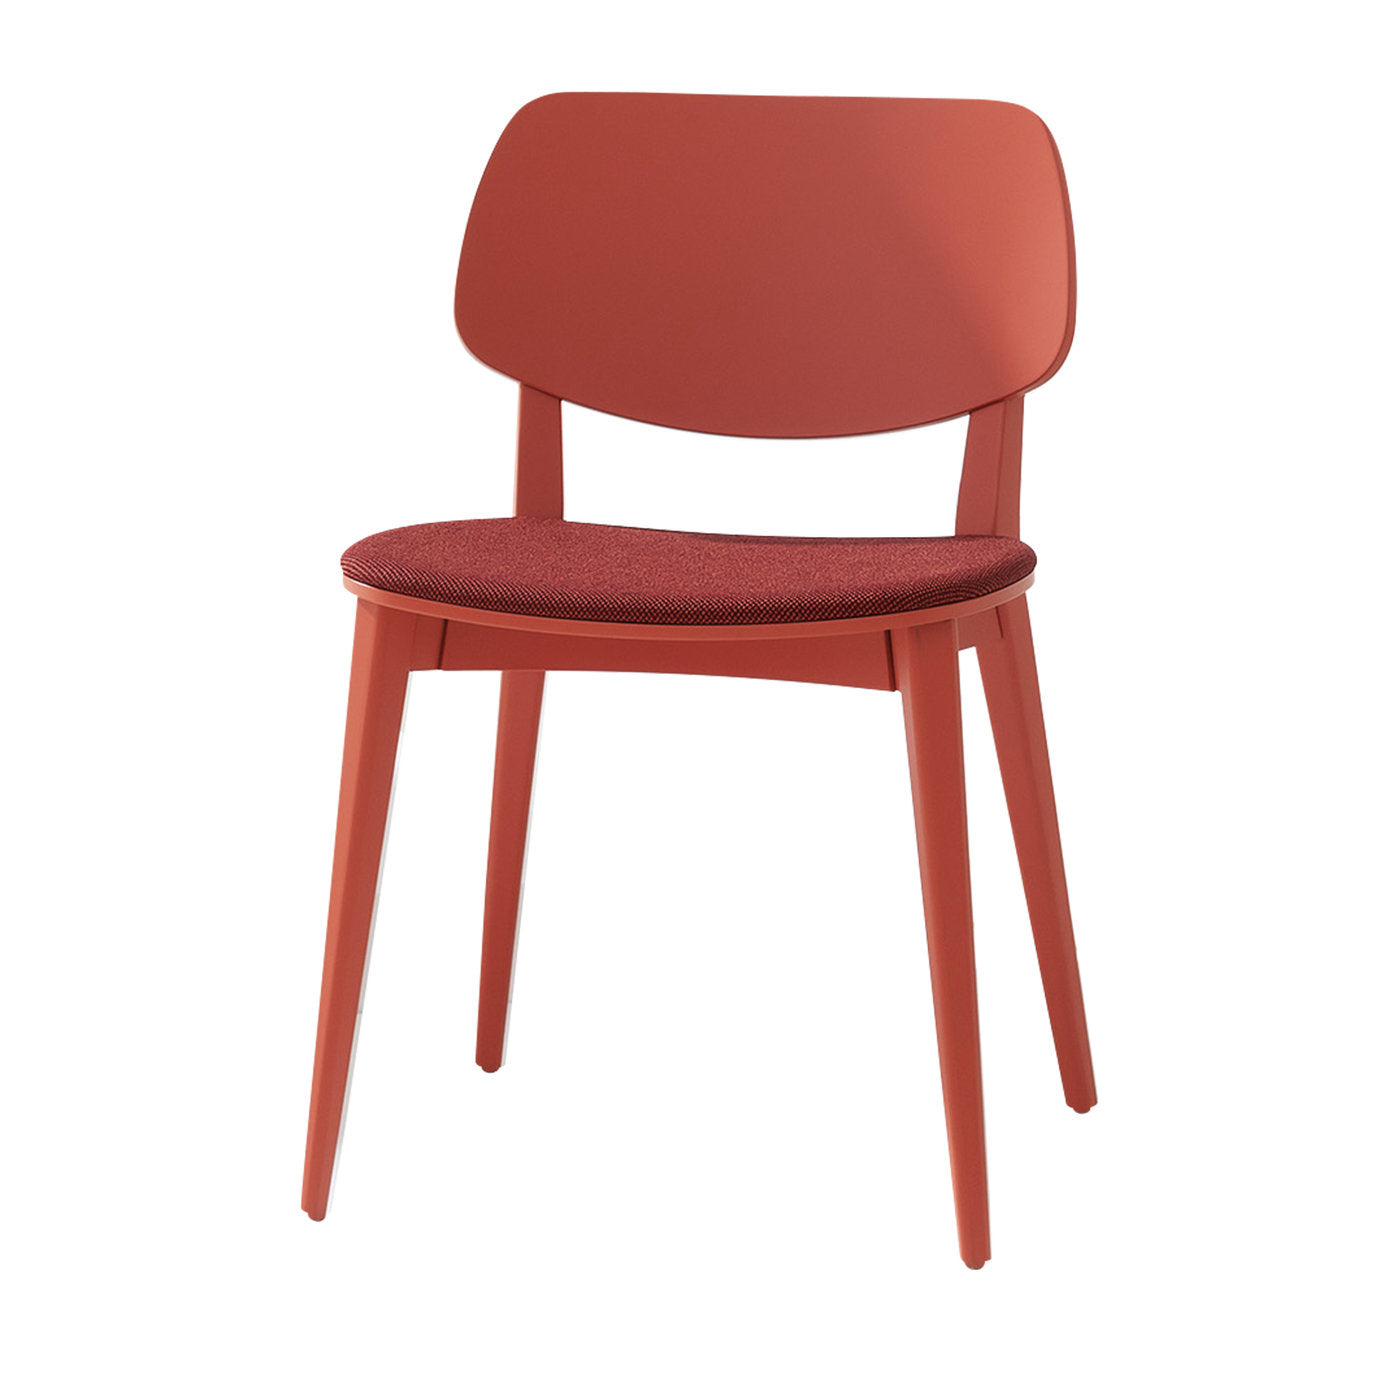 Puppe 551 Roter Stuhl von Emilio Nanni - Hauptansicht